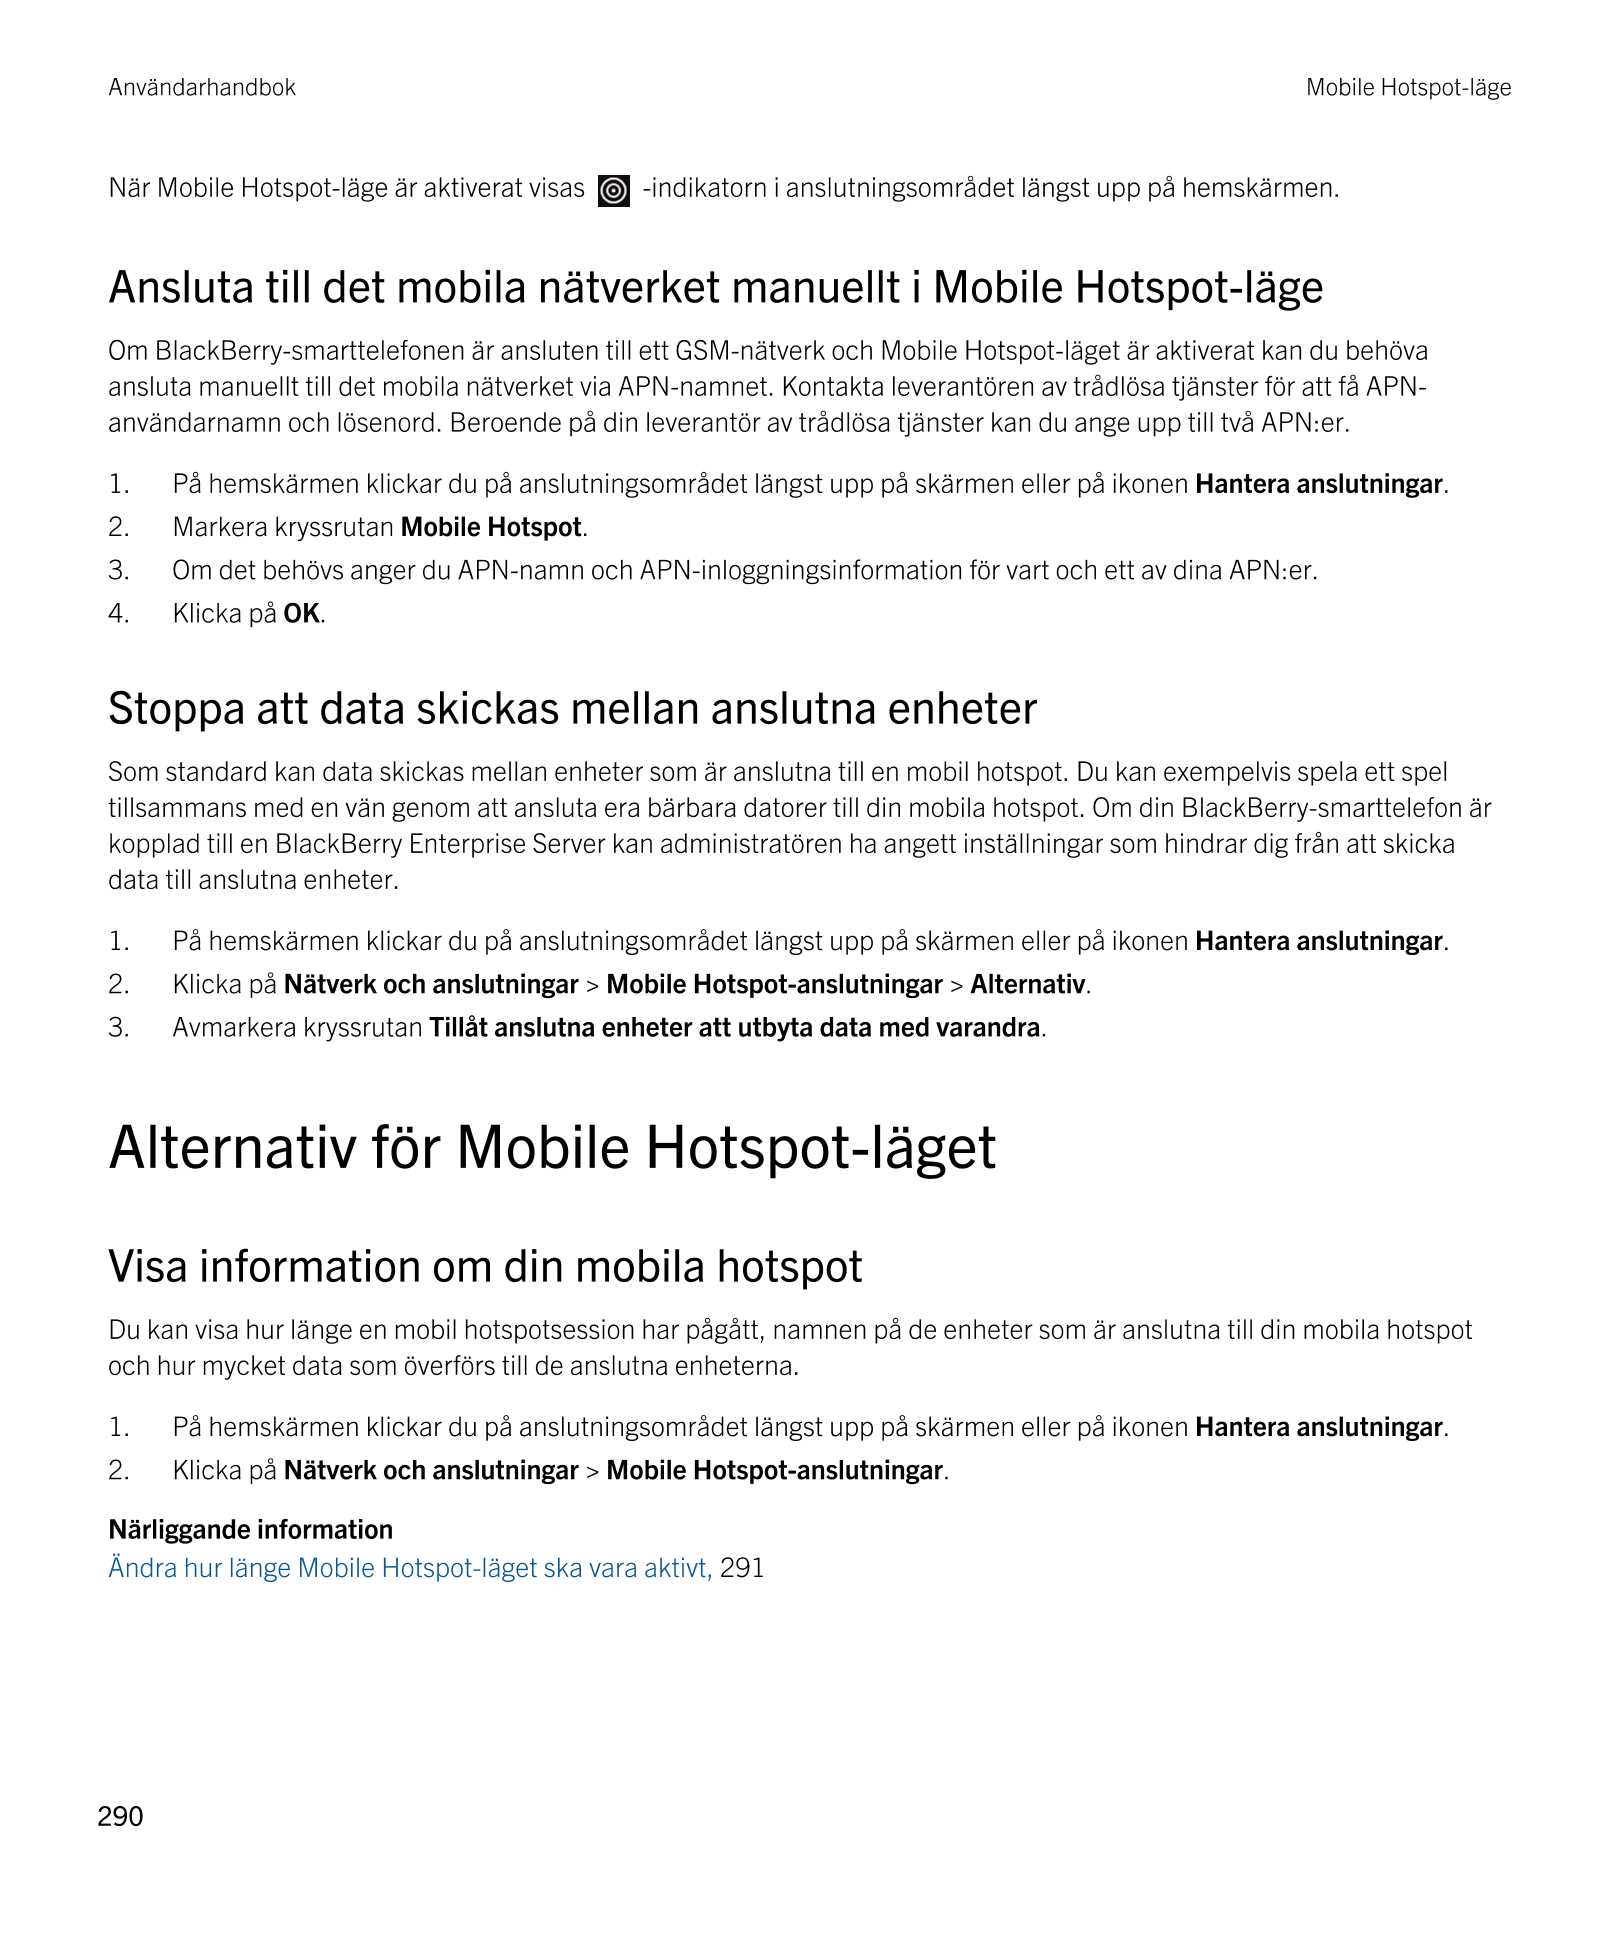 Användarhandbok Mobile Hotspot-läge
När Mobile Hotspot-läge är aktiverat visas    -indikatorn i anslutningsområdet längst upp på